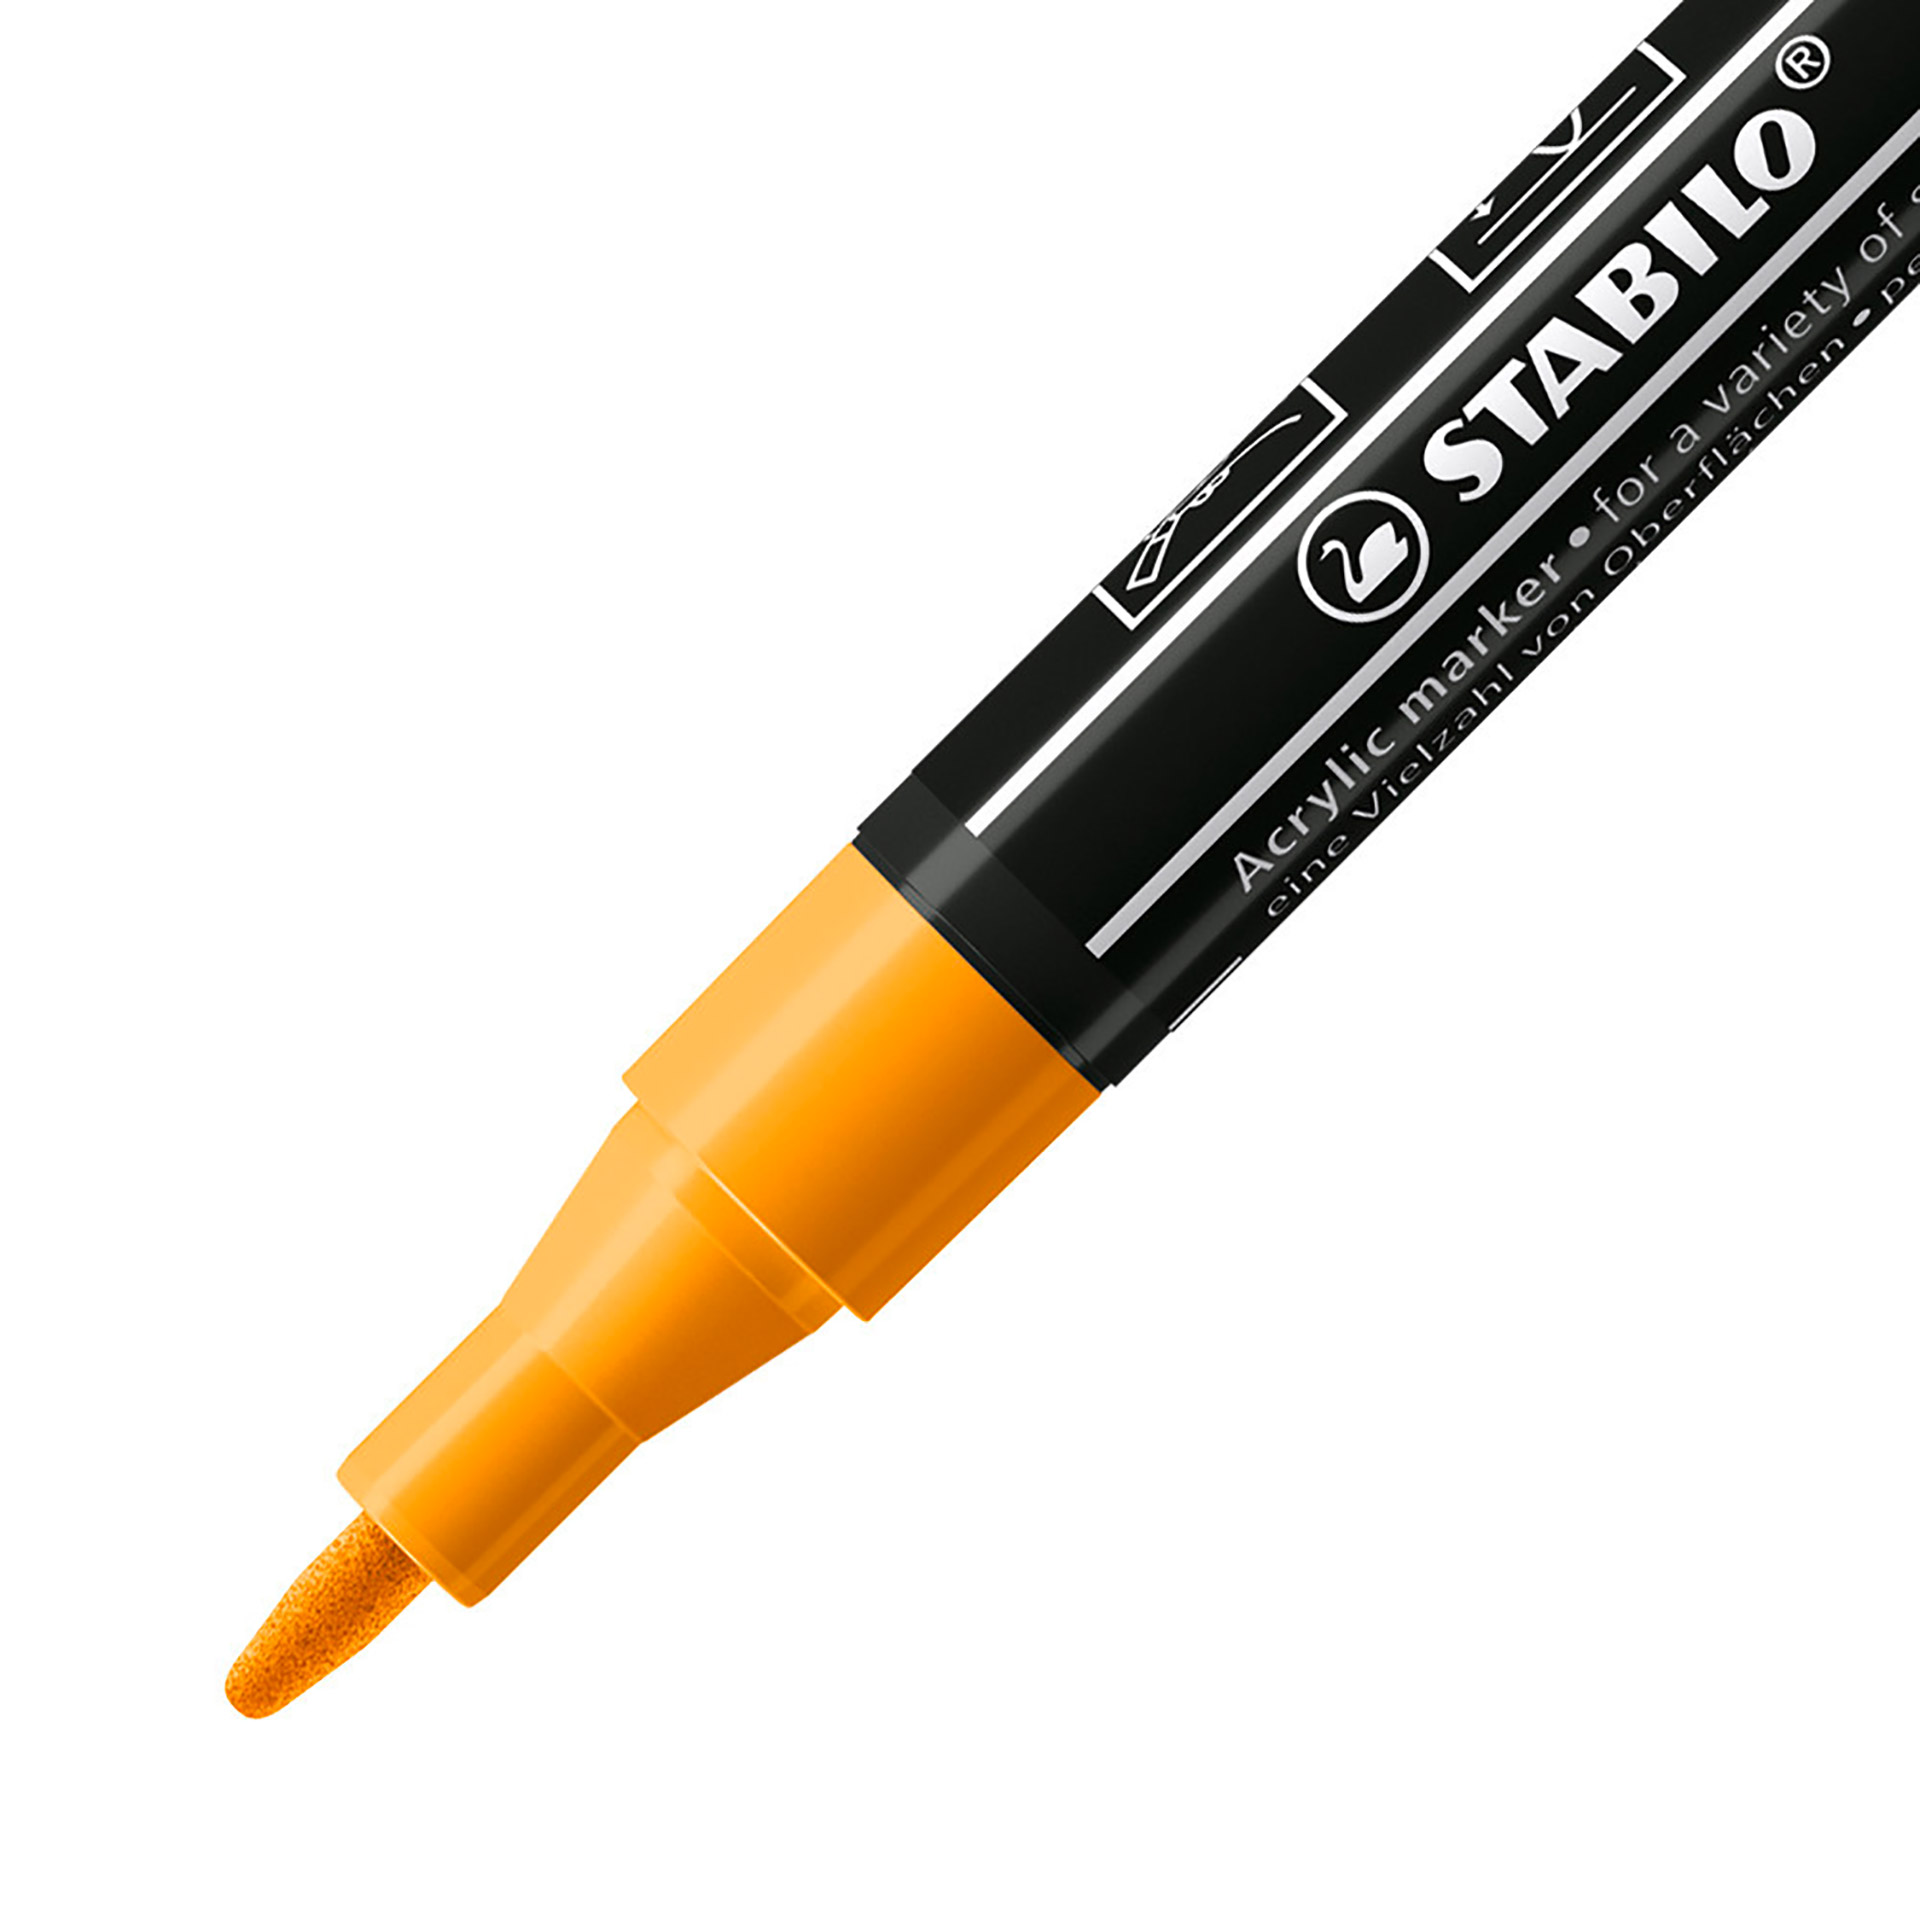 STABILO FREE Acrylic - T100 Punta rotonda 1-2mm - Confezione da 5 - Arancione, , large